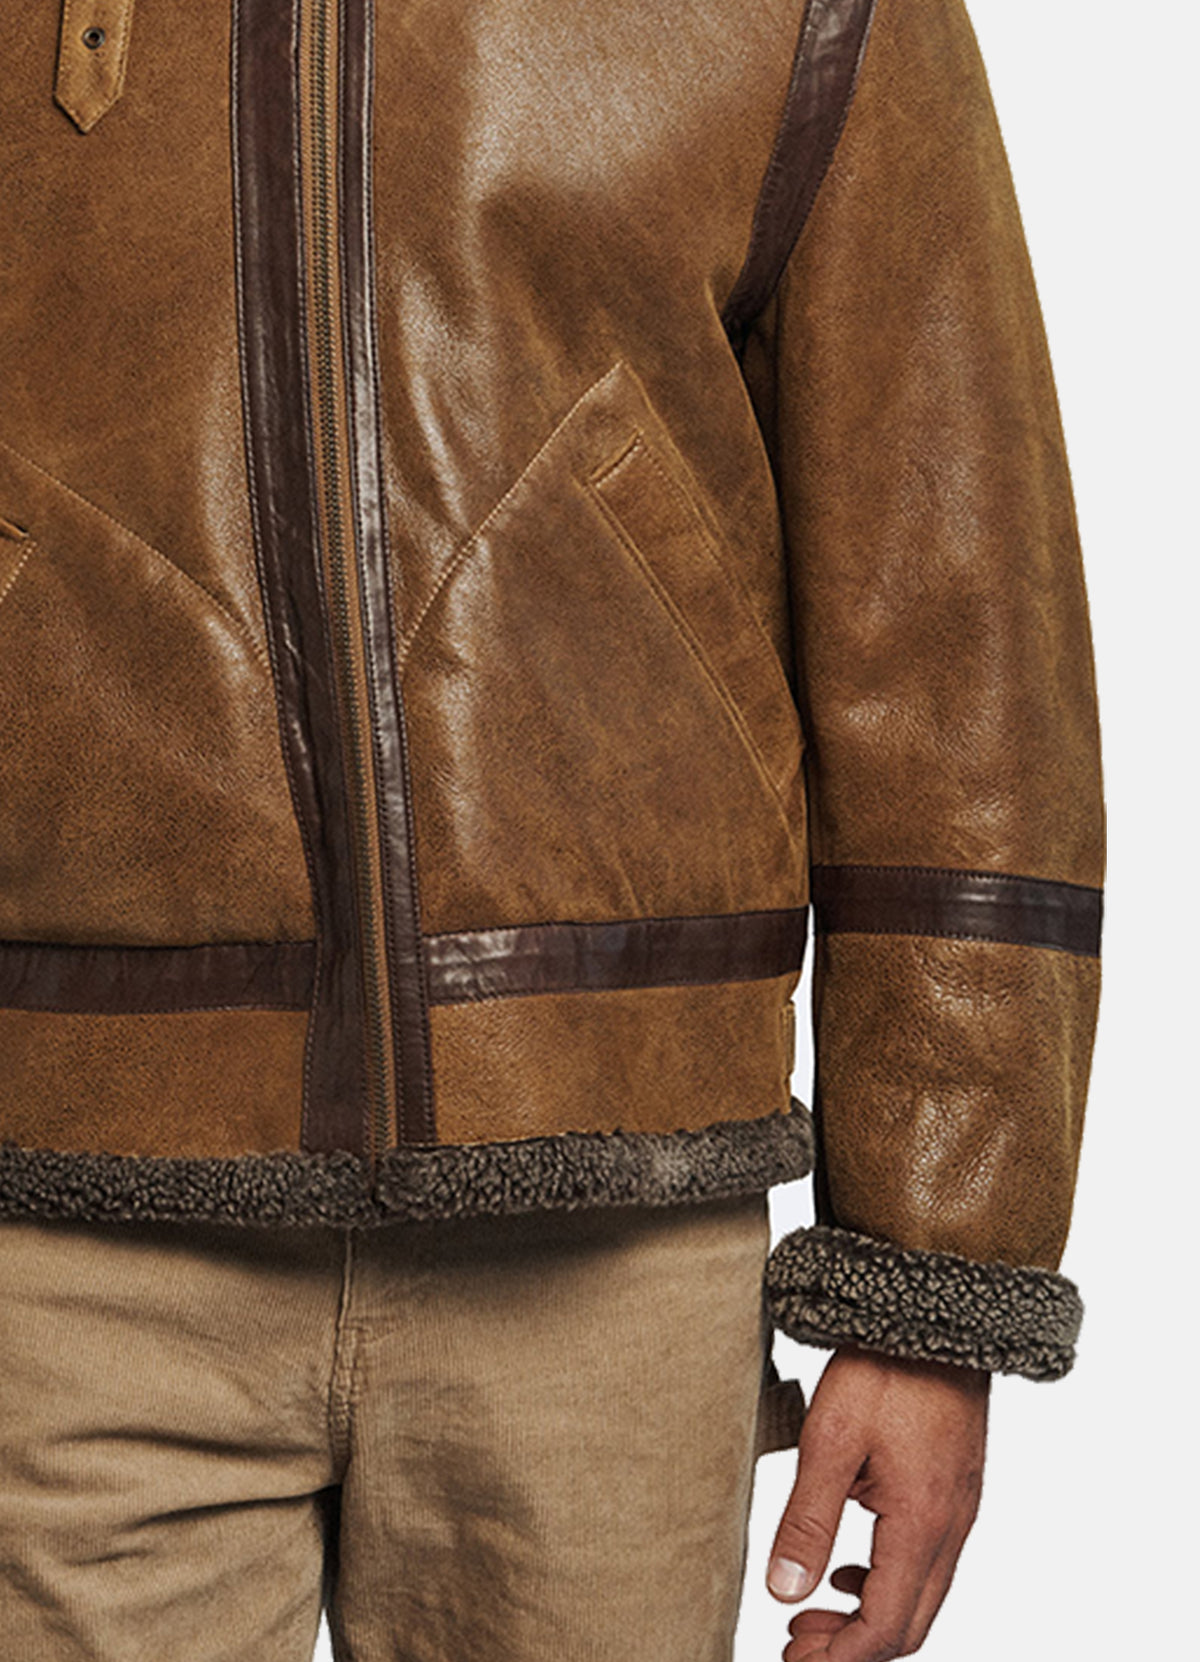 Mens Vintage Brown Shearling Leather Jacket | Elite